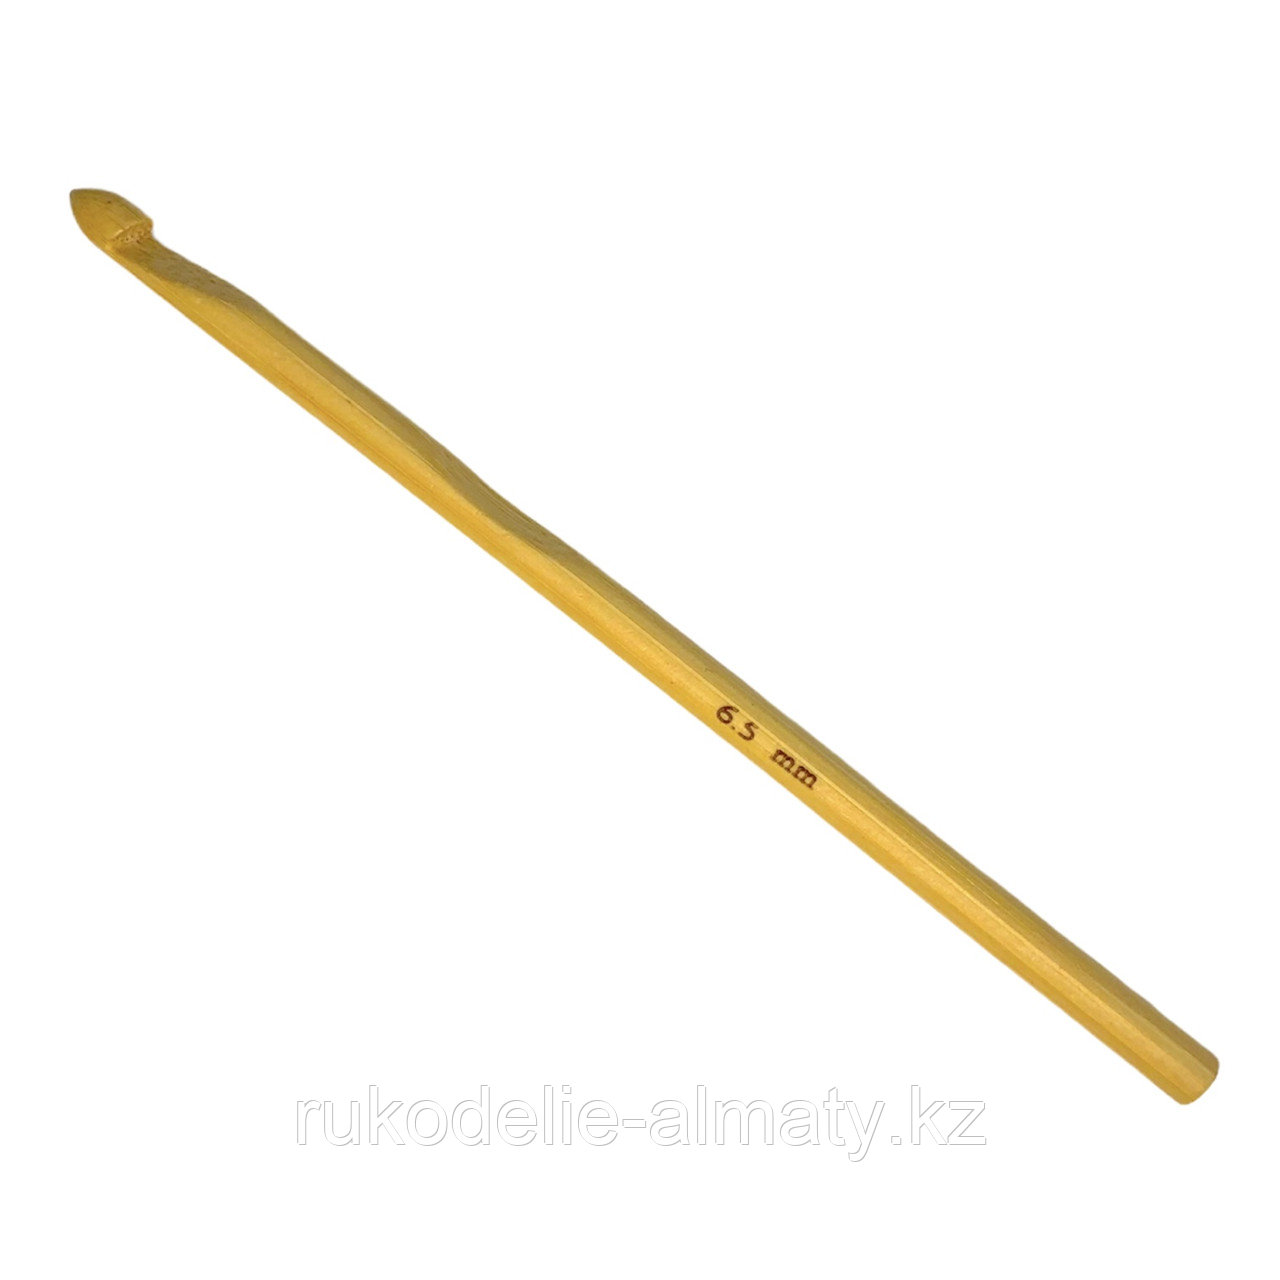 Крючок для вязания бамбуковый 6.5